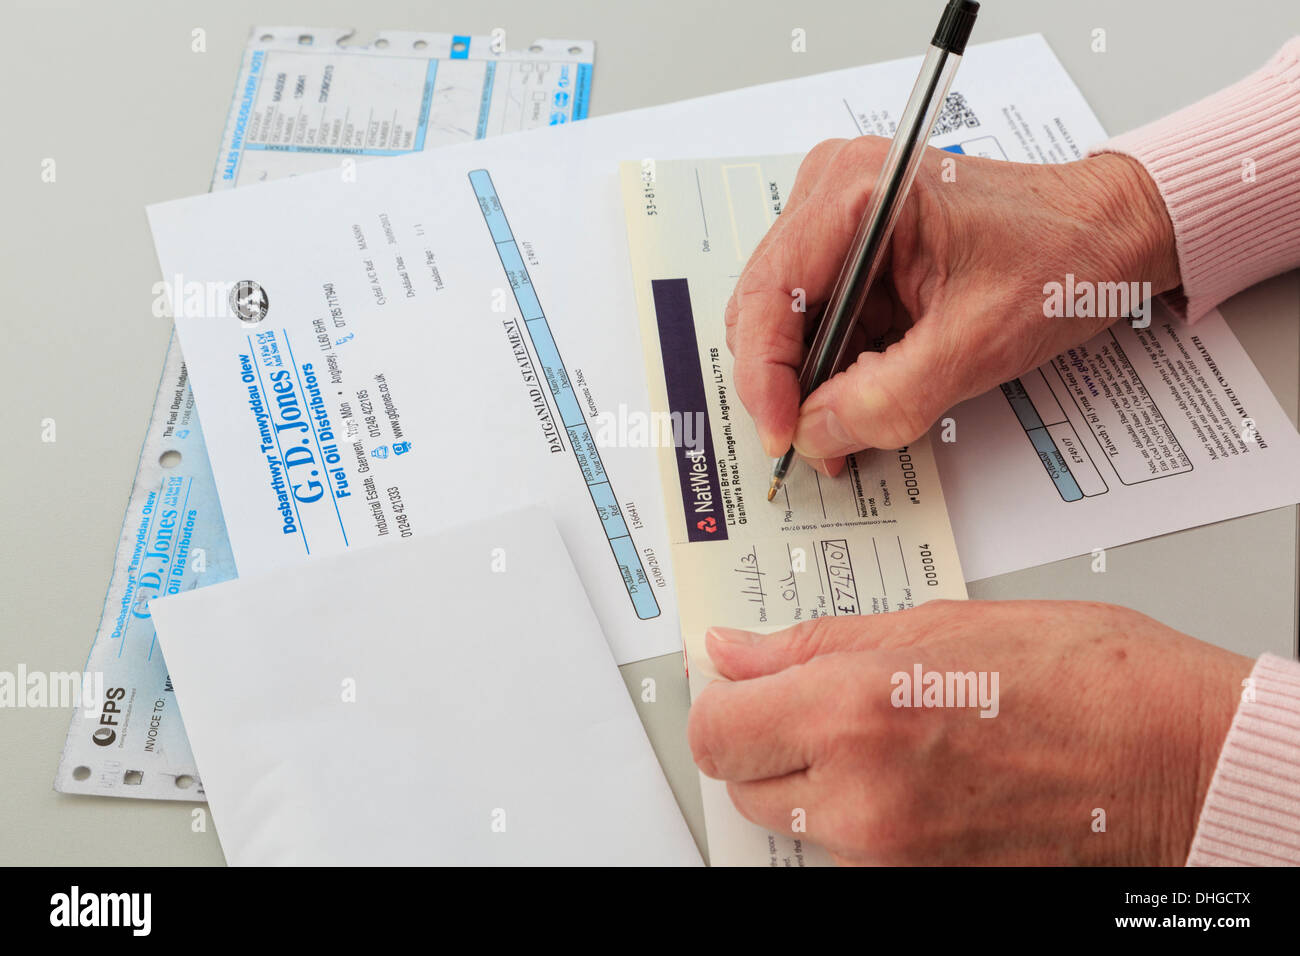 L'écriture d'un pensionné Senior woman Nat West chèque bancaire à payer pour une grande loi de combustible pour le chauffage résidentiel au Pays de Galles, Royaume-Uni, Angleterre Banque D'Images